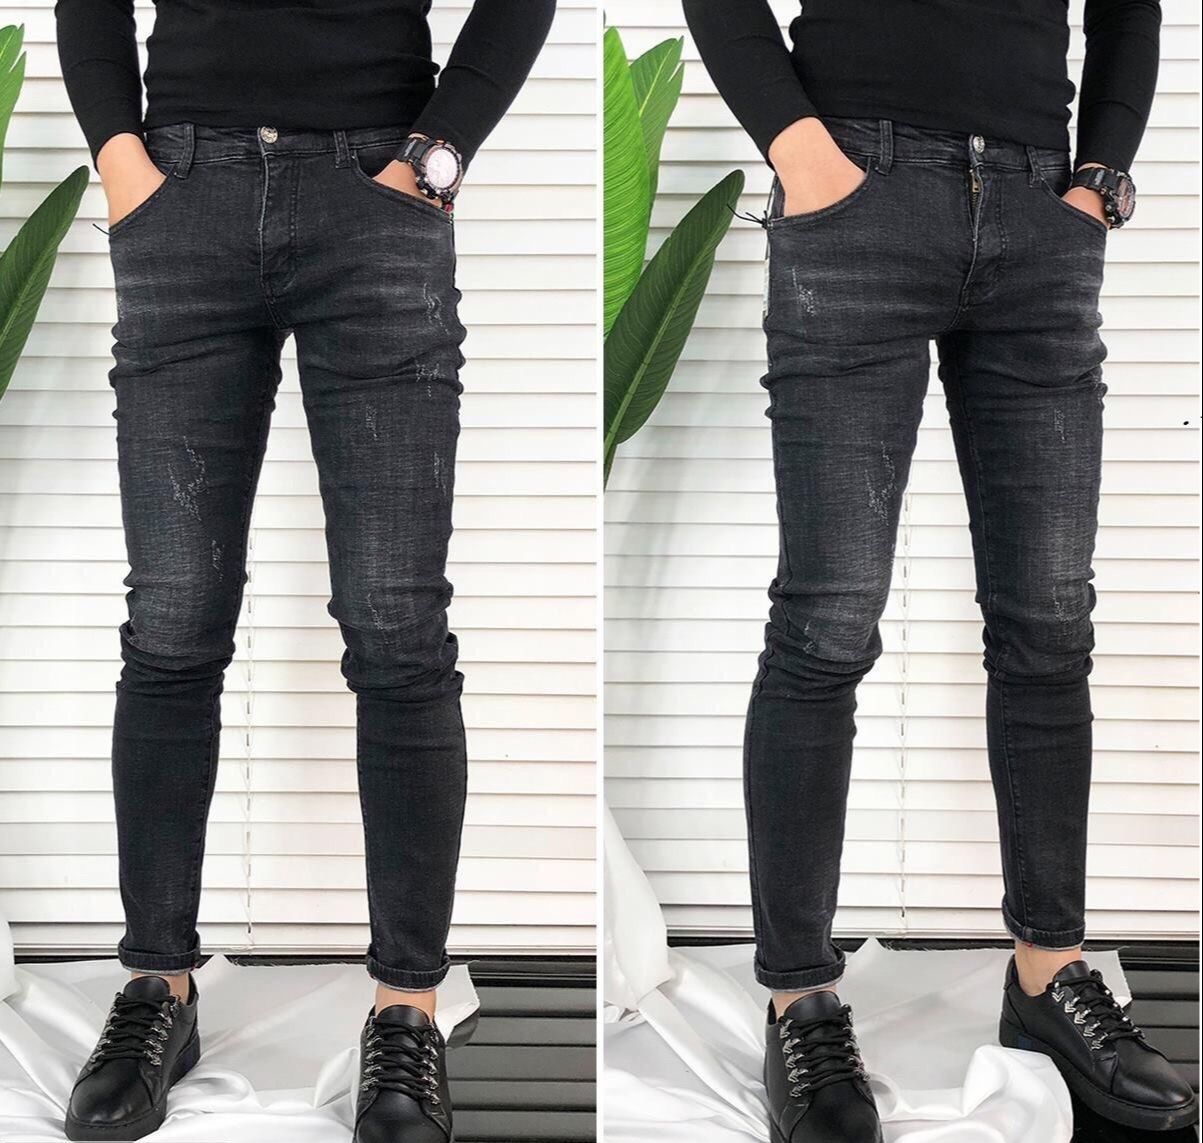 quần jean nam xám đen xước nhẹ siêu đẹp 184.